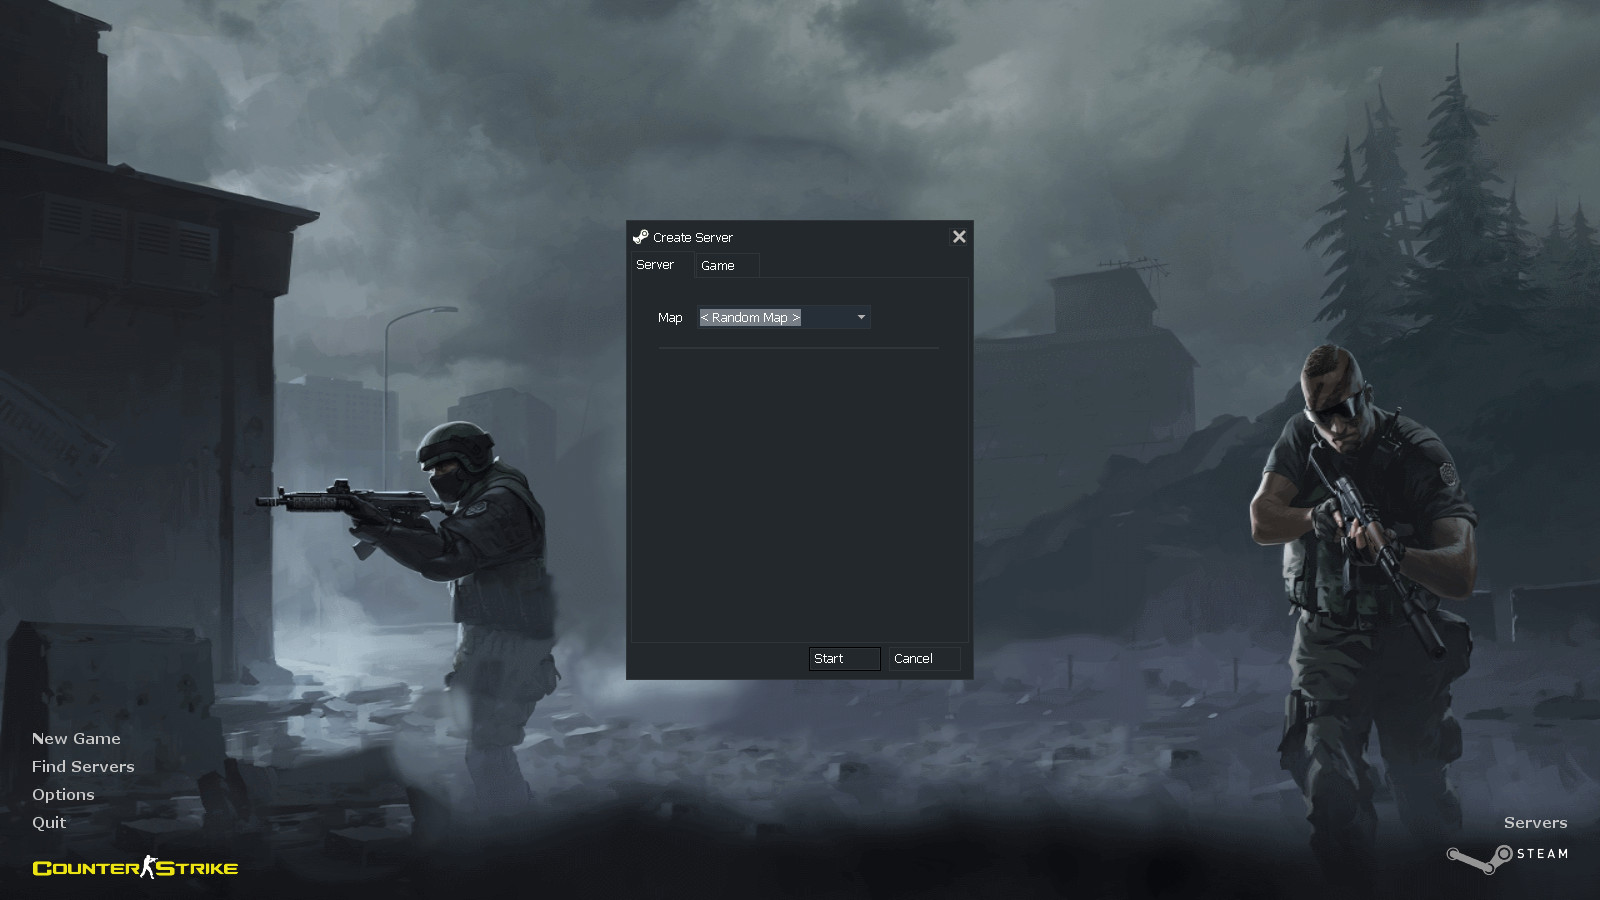 New main menu for CS [Counter-Strike 1.6] [Mods]